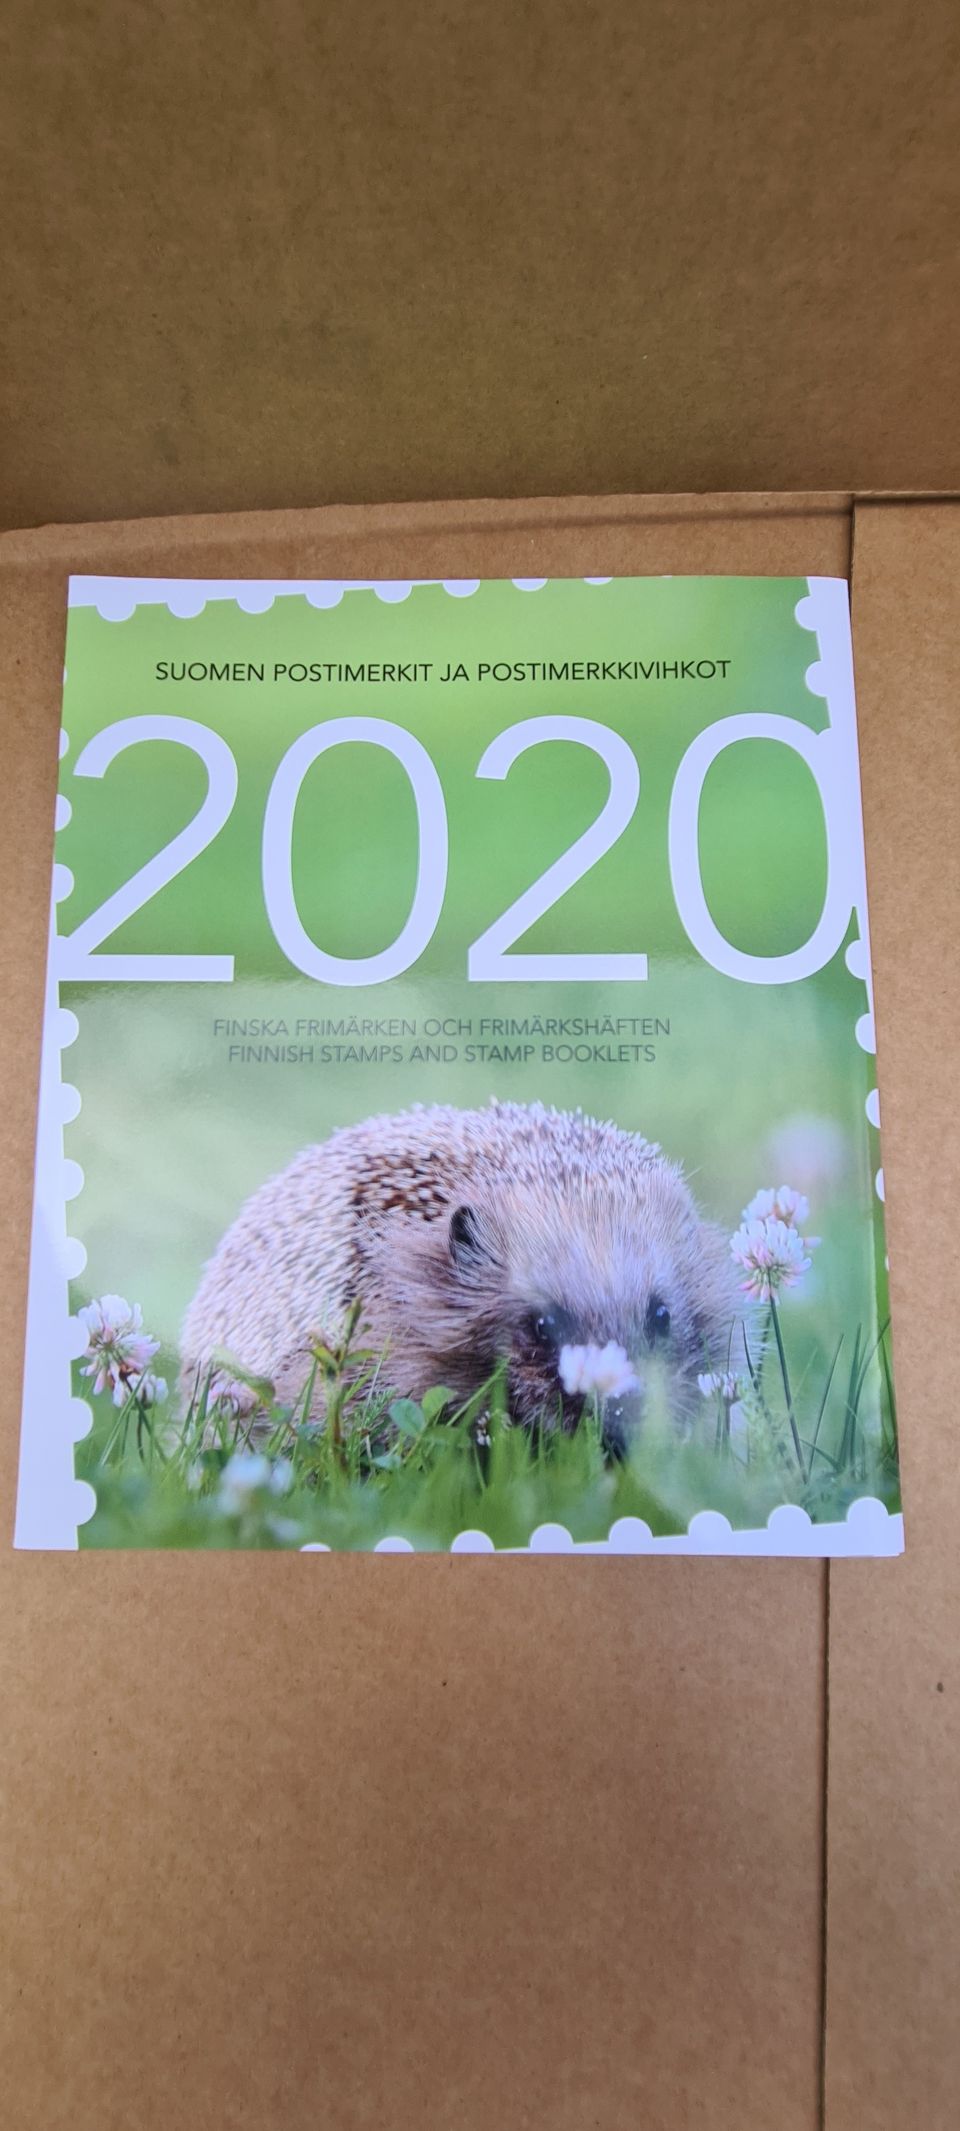 2020 koko vuoden postimerkit.